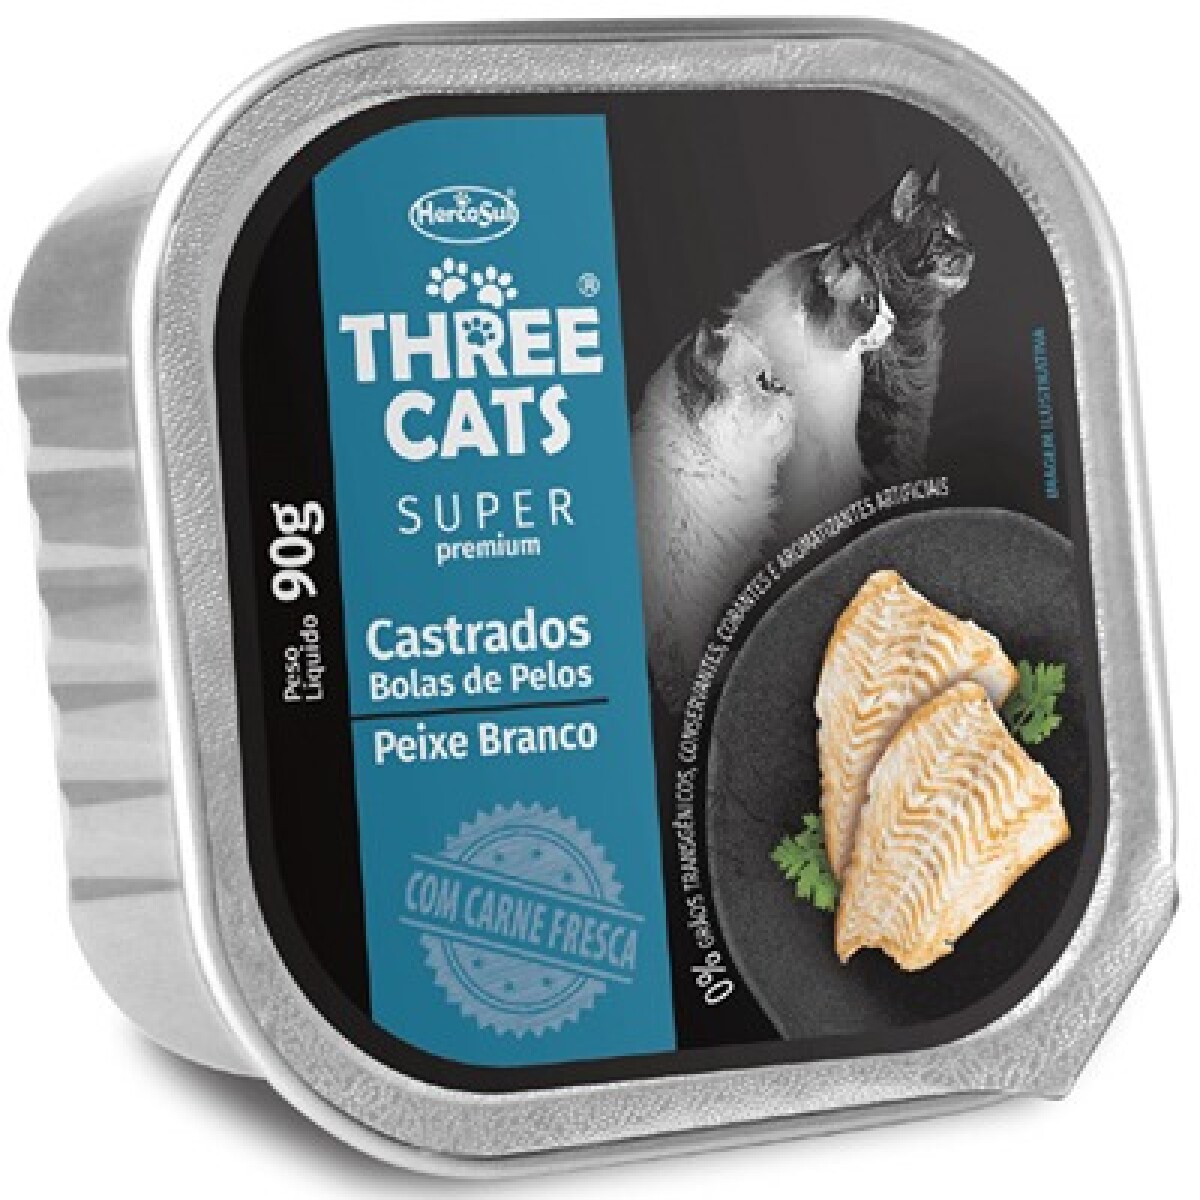 THREE CATS PATÉ BOLA DE PELOS 90 GR - Unica 